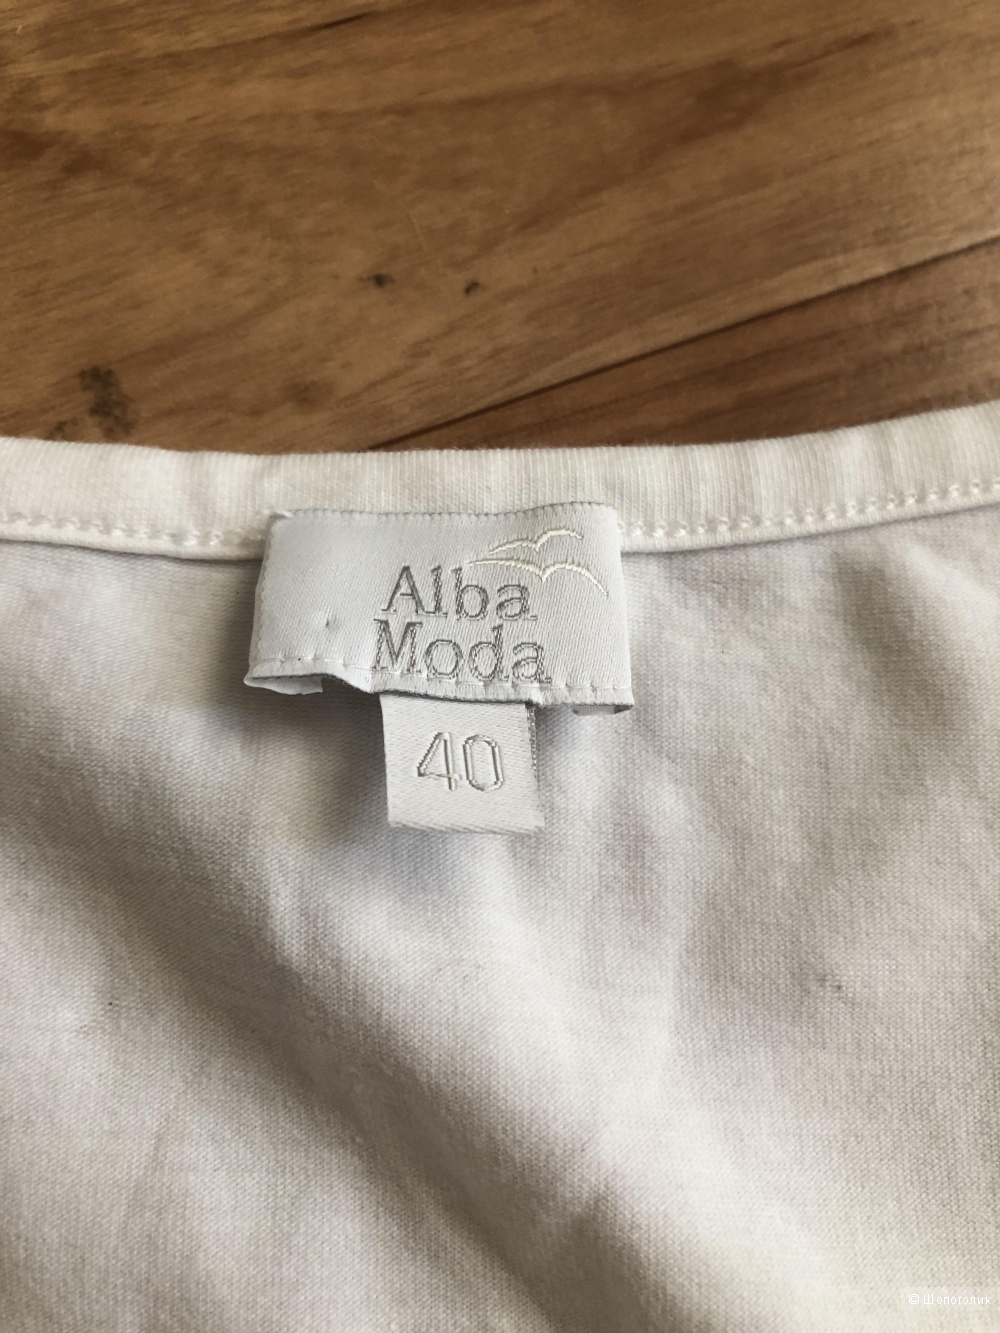 Комплект джемперов Alba moda, Delight, размер L/XL